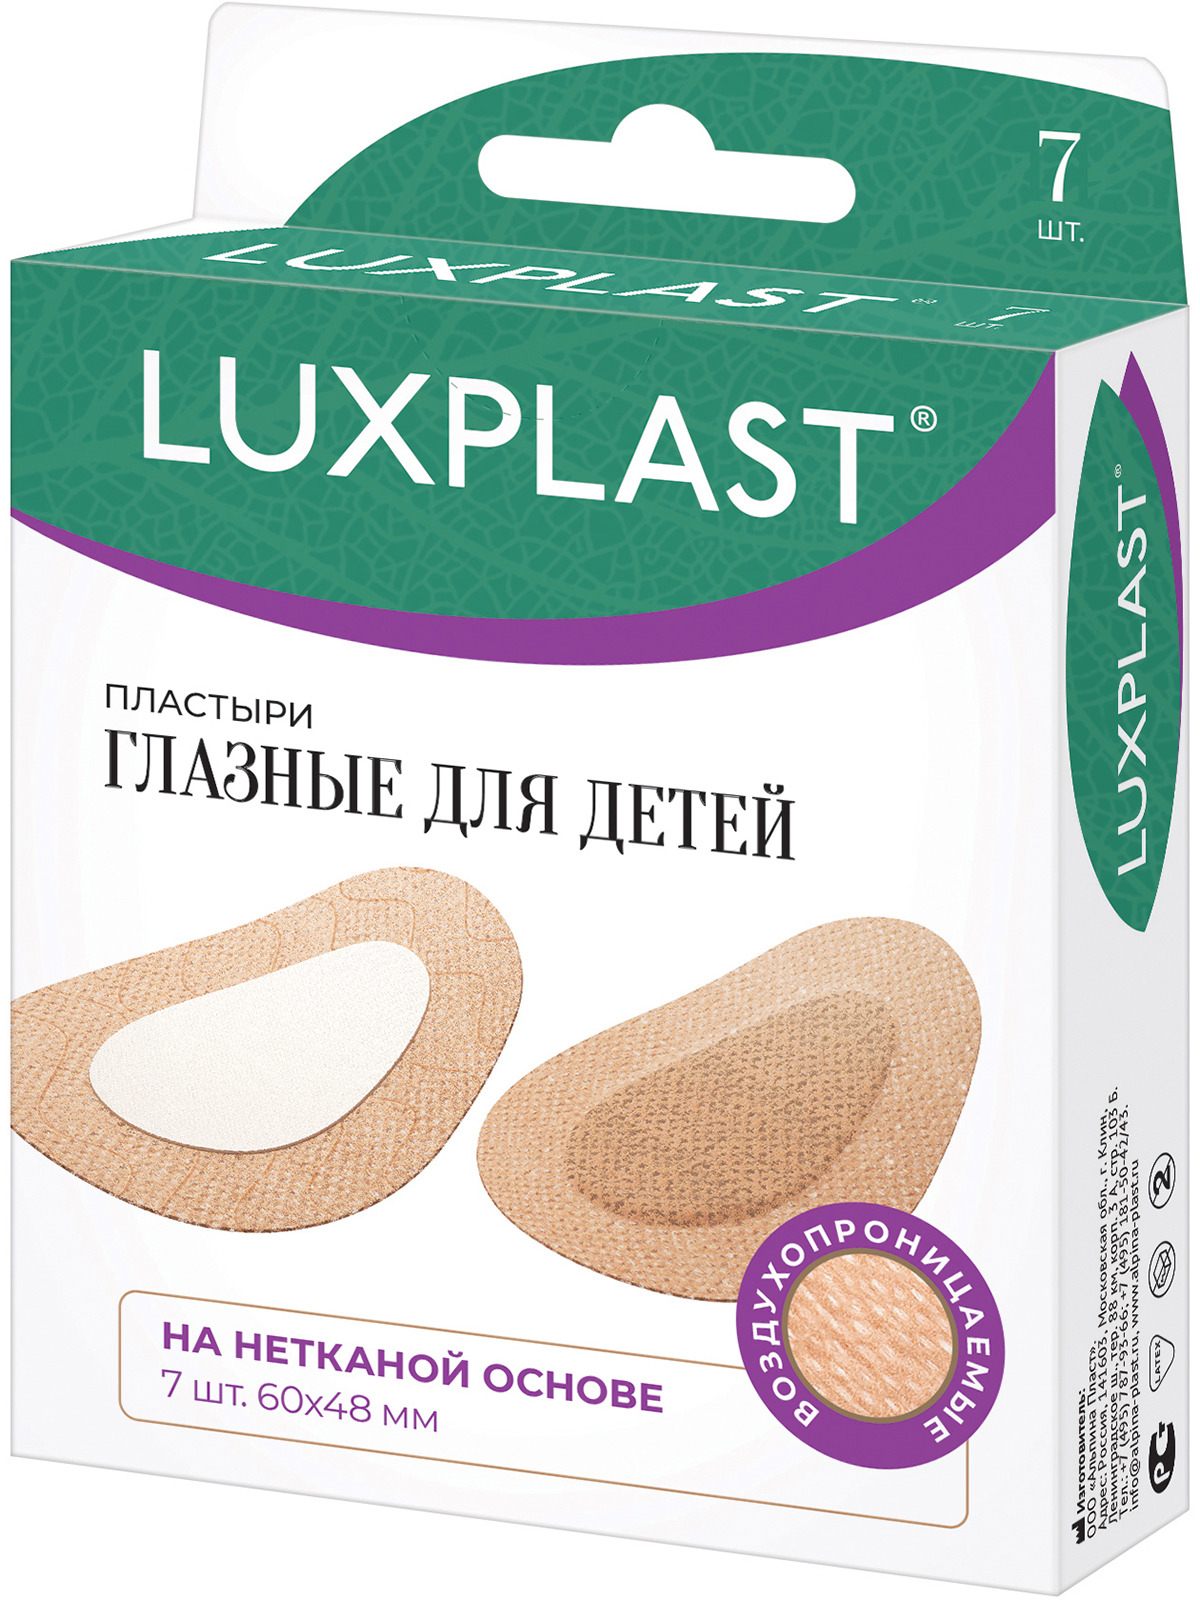 Пластырь Luxplast глазной для детей на нетканой основе 7 шт.